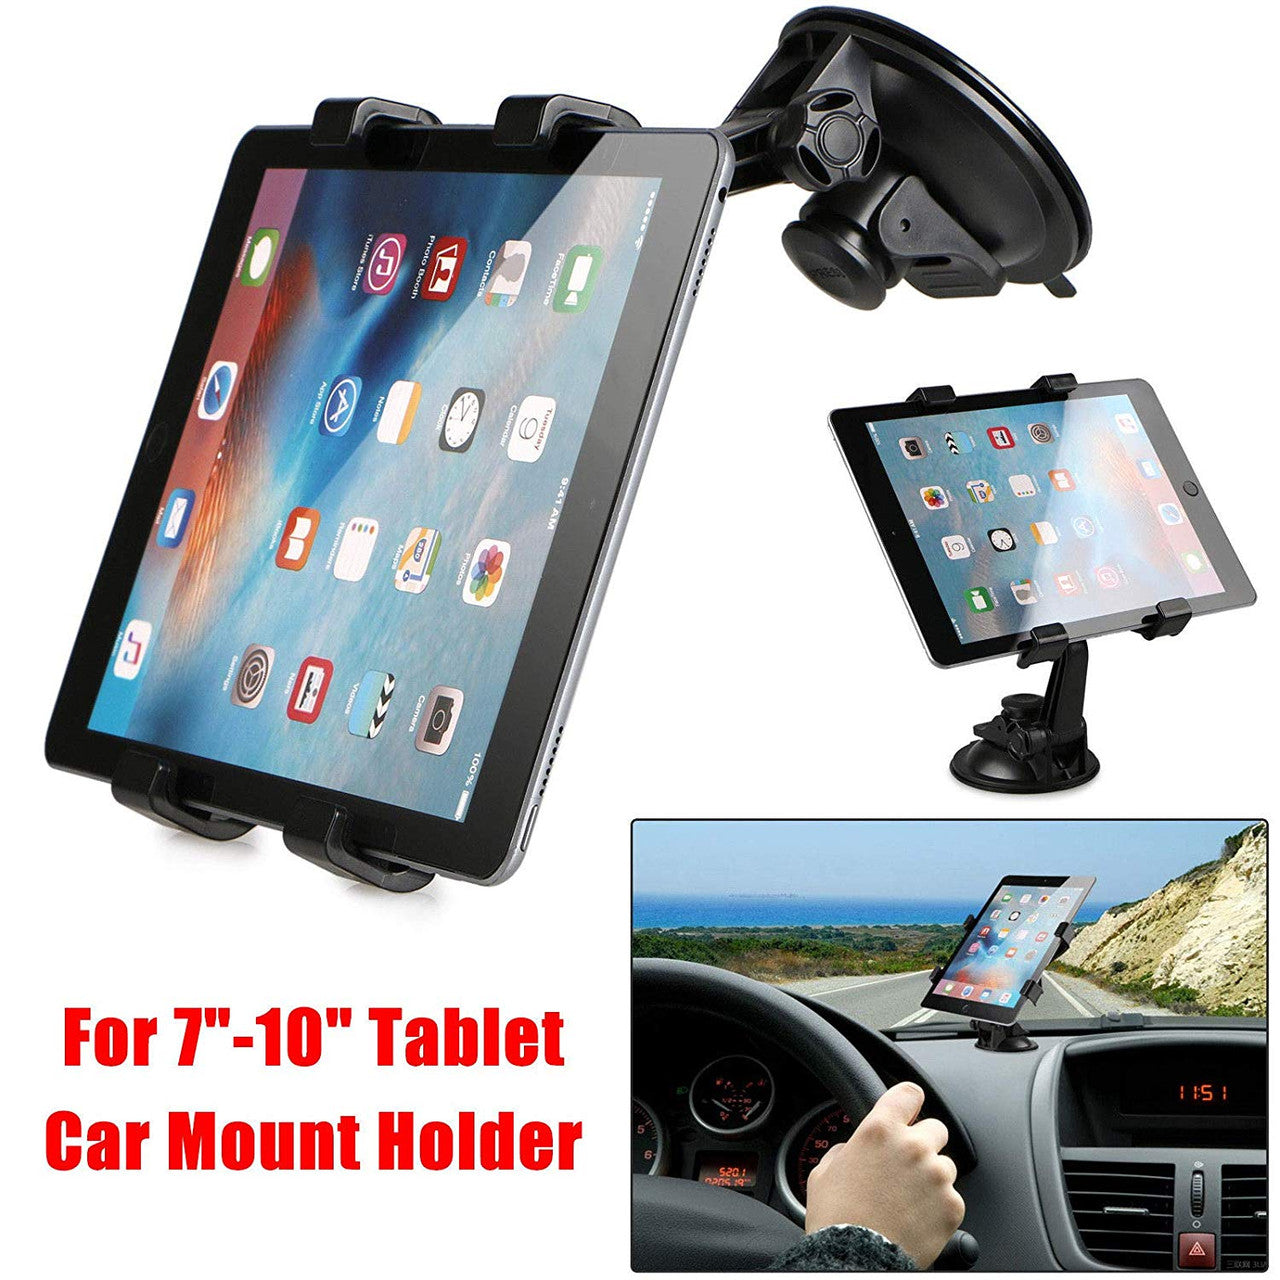 360掳 Rotation Car Mount Windshield Desk Dashboard for iPad Pro 9.7 iPad Mini 4/3/2/1 Samsung Galaxy Tab E 9.6/8.0 A 7.0/8.0/9.7 and All 7-10 inch Tablets